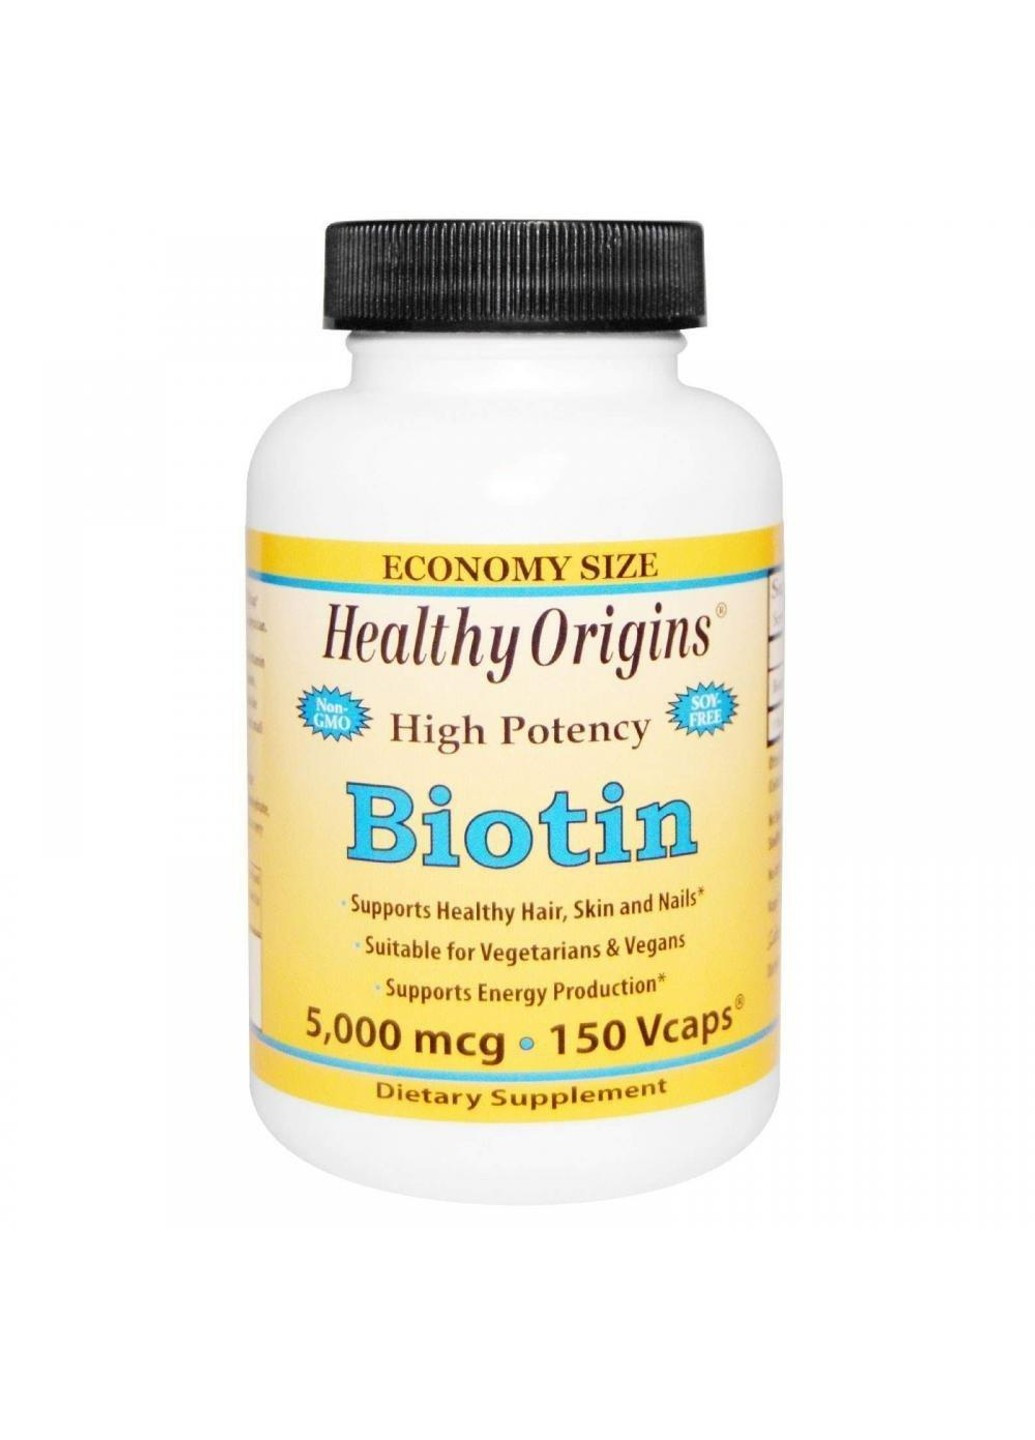 Біотин Biotin 5000 mcg (60 капс) вітамін б7 Хелсі оригінал Healthy Origins (255408845)